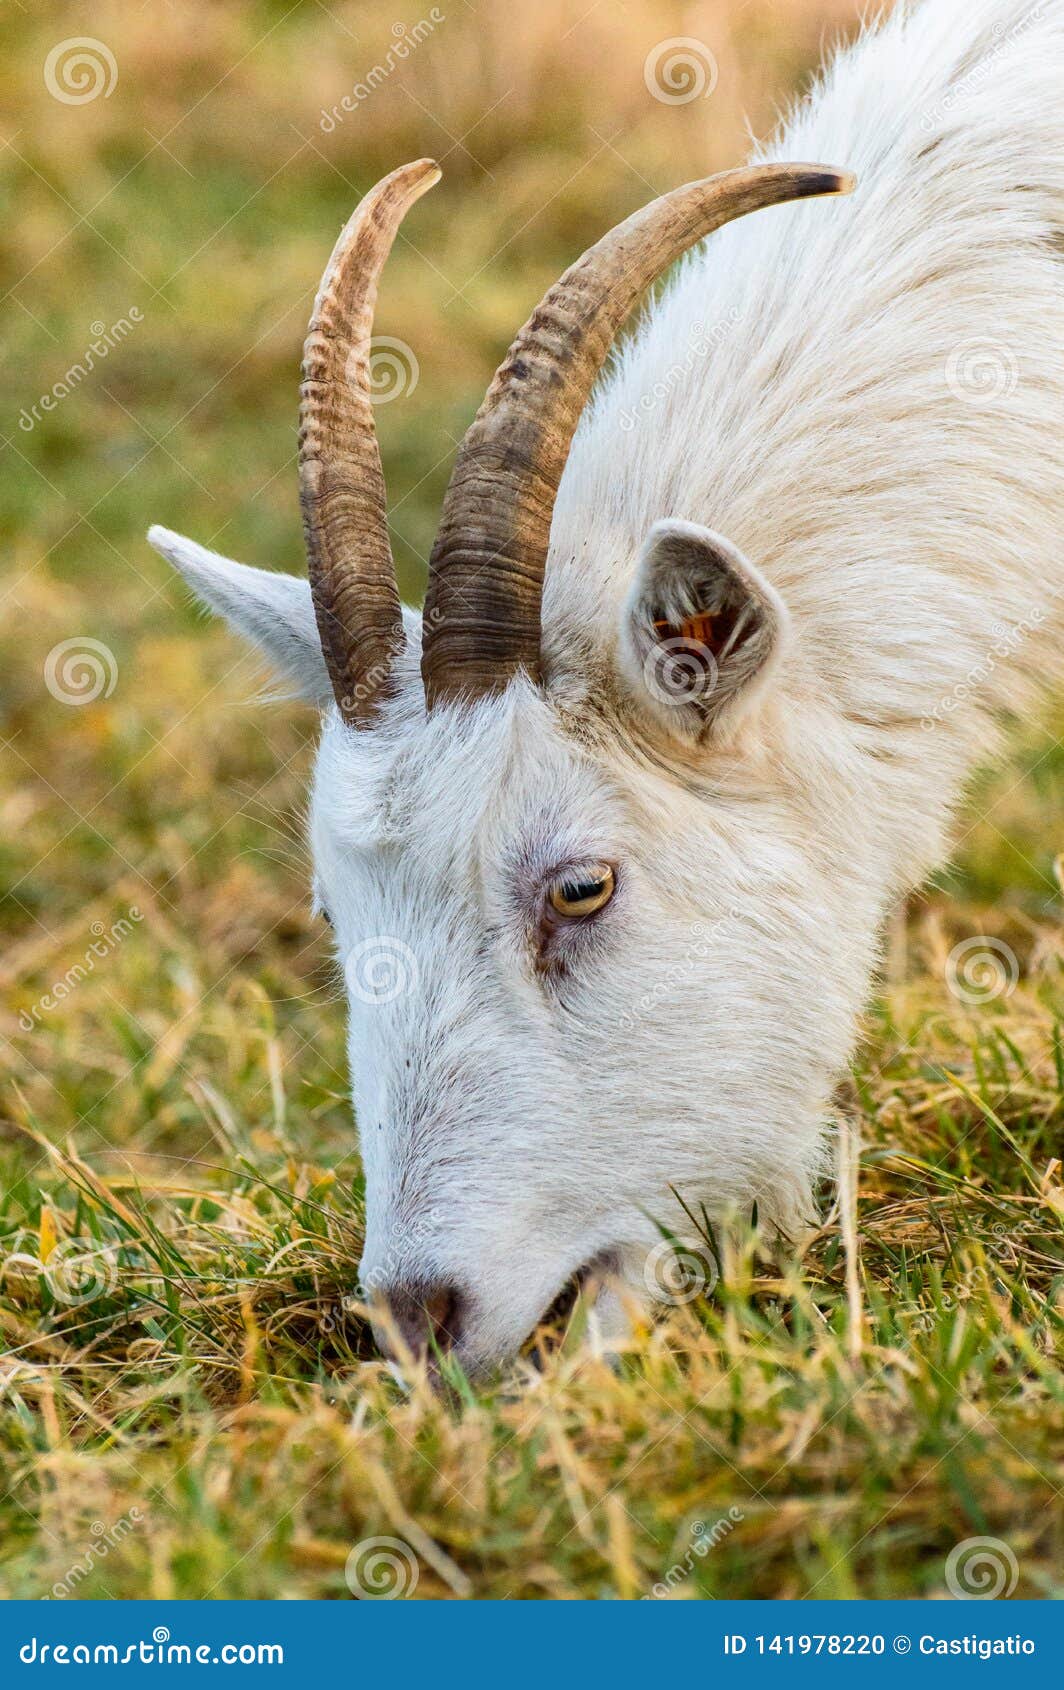 capra hircus a goat grazing in a meadow